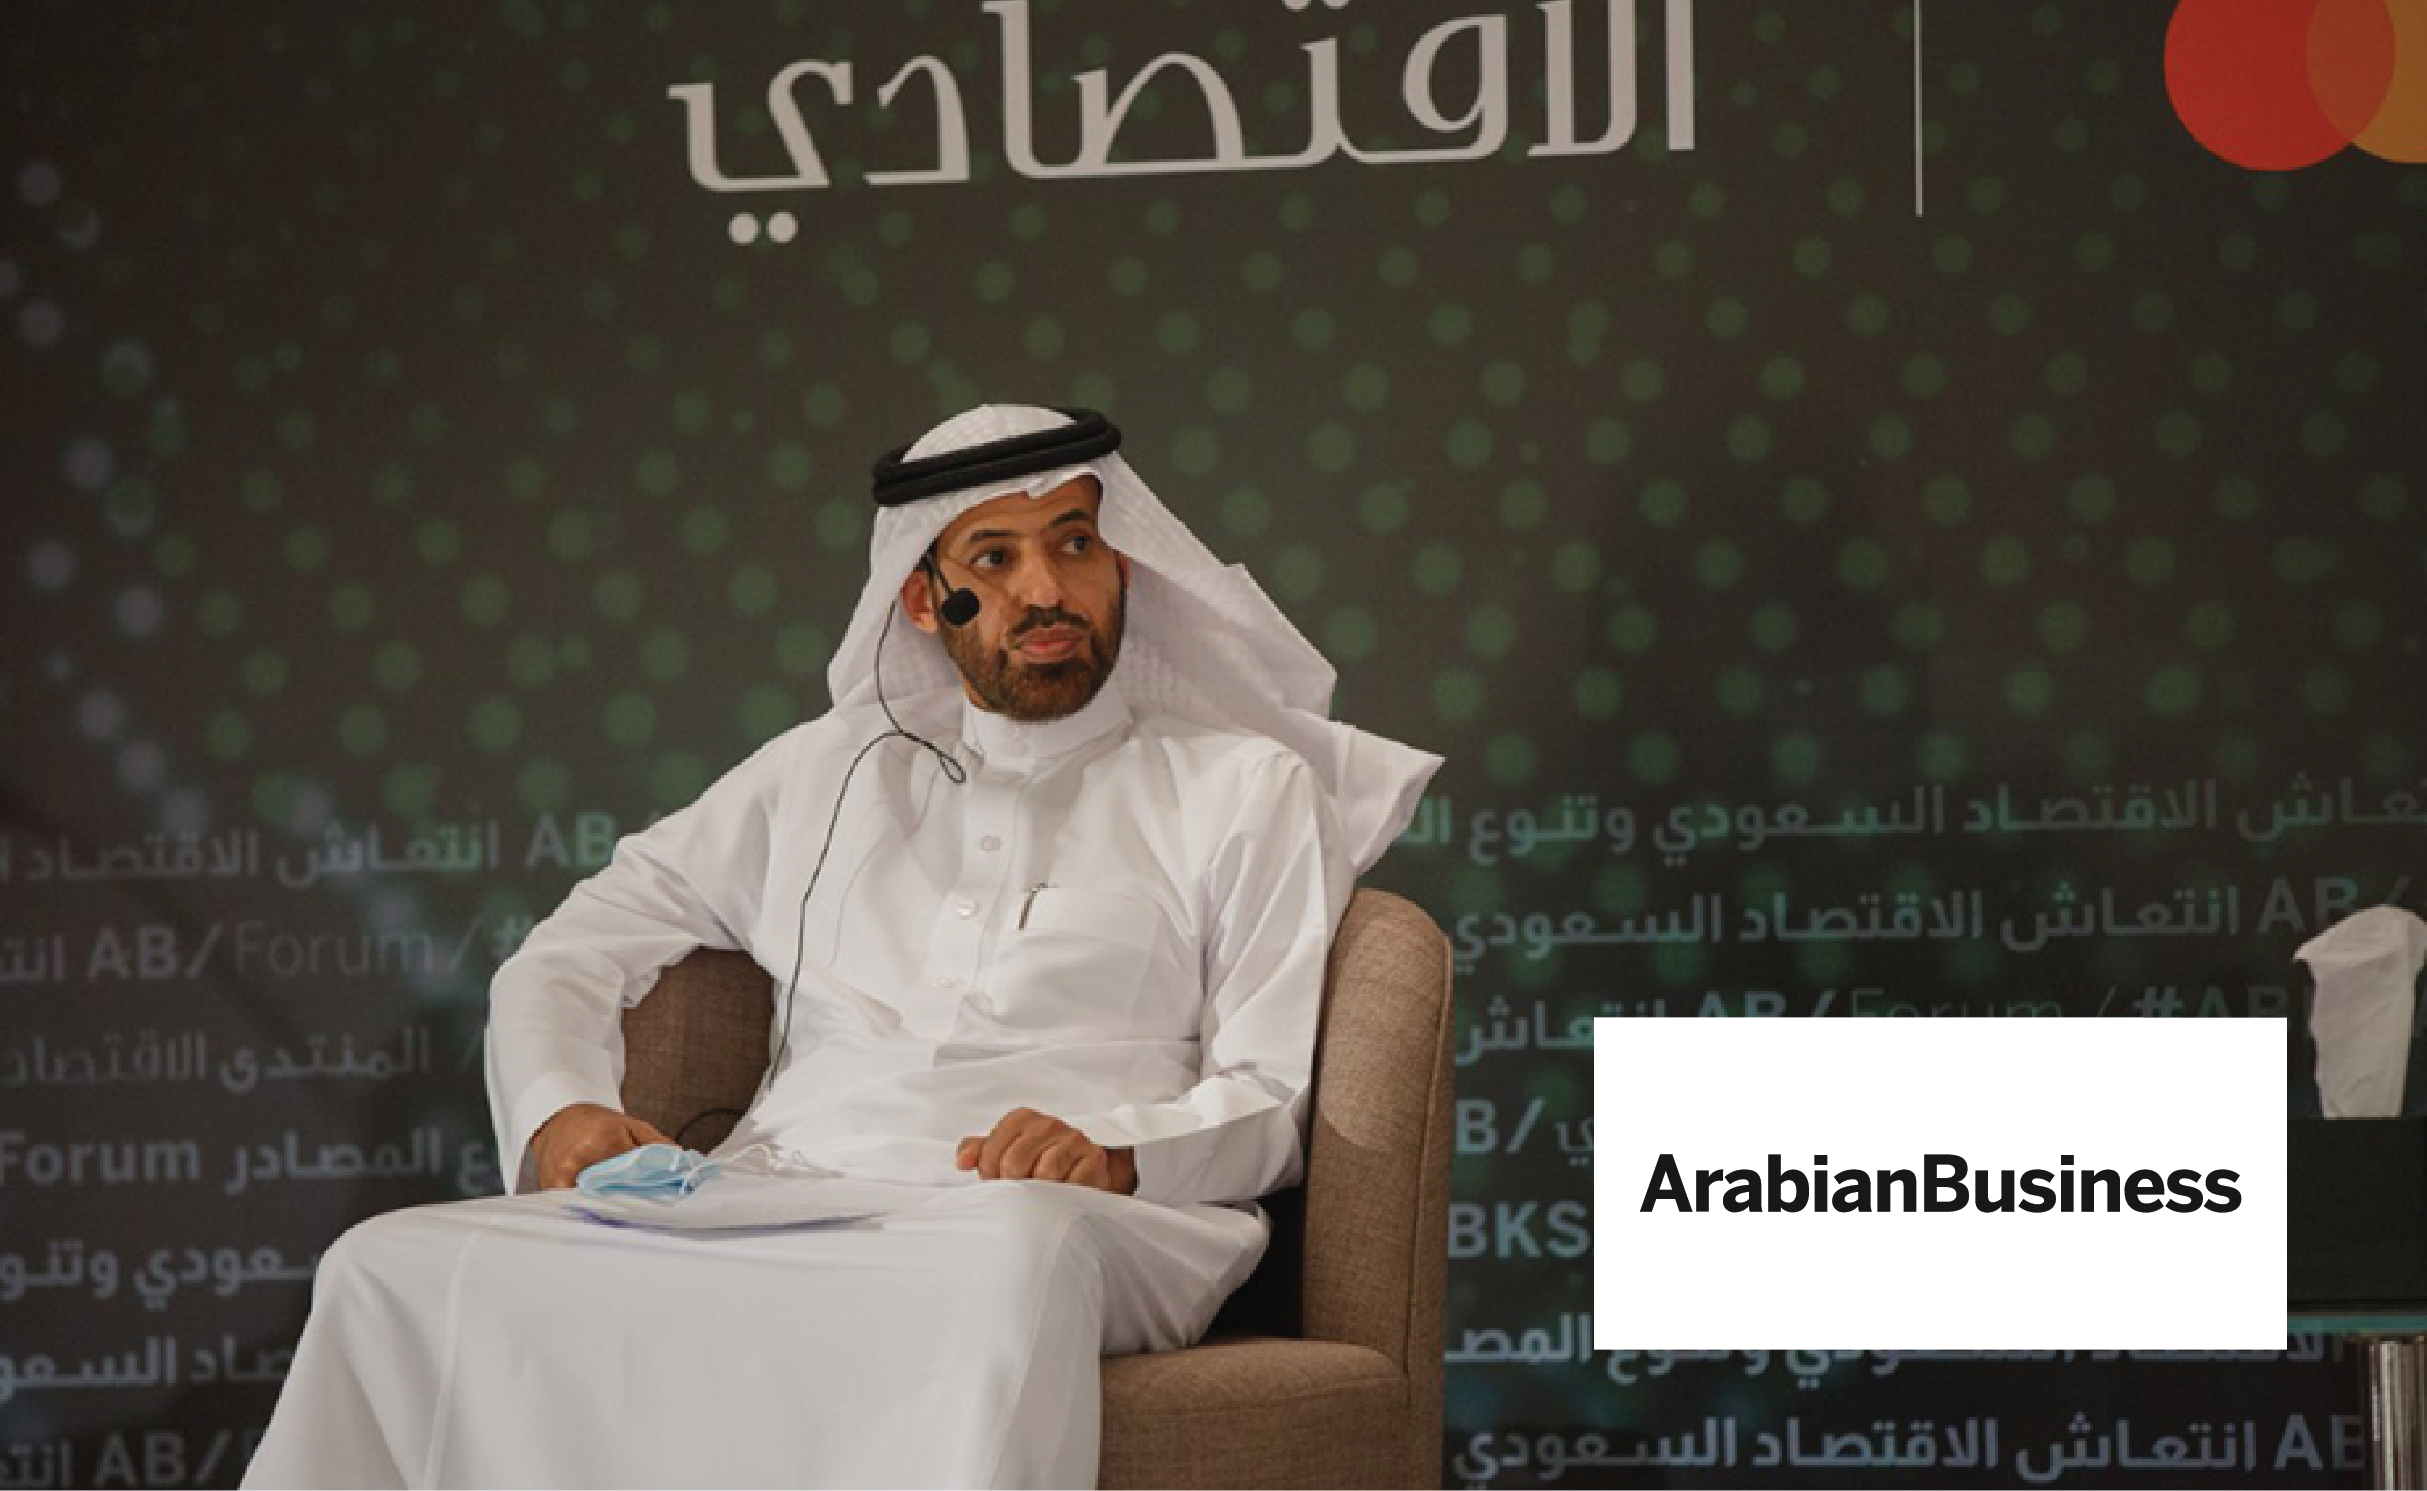 أريبيان بزنس: "ابراهيم السليمان" العقار أحد شرايين الاقتصاد السعودي ومؤثر إيجابي في الناتج المحلي